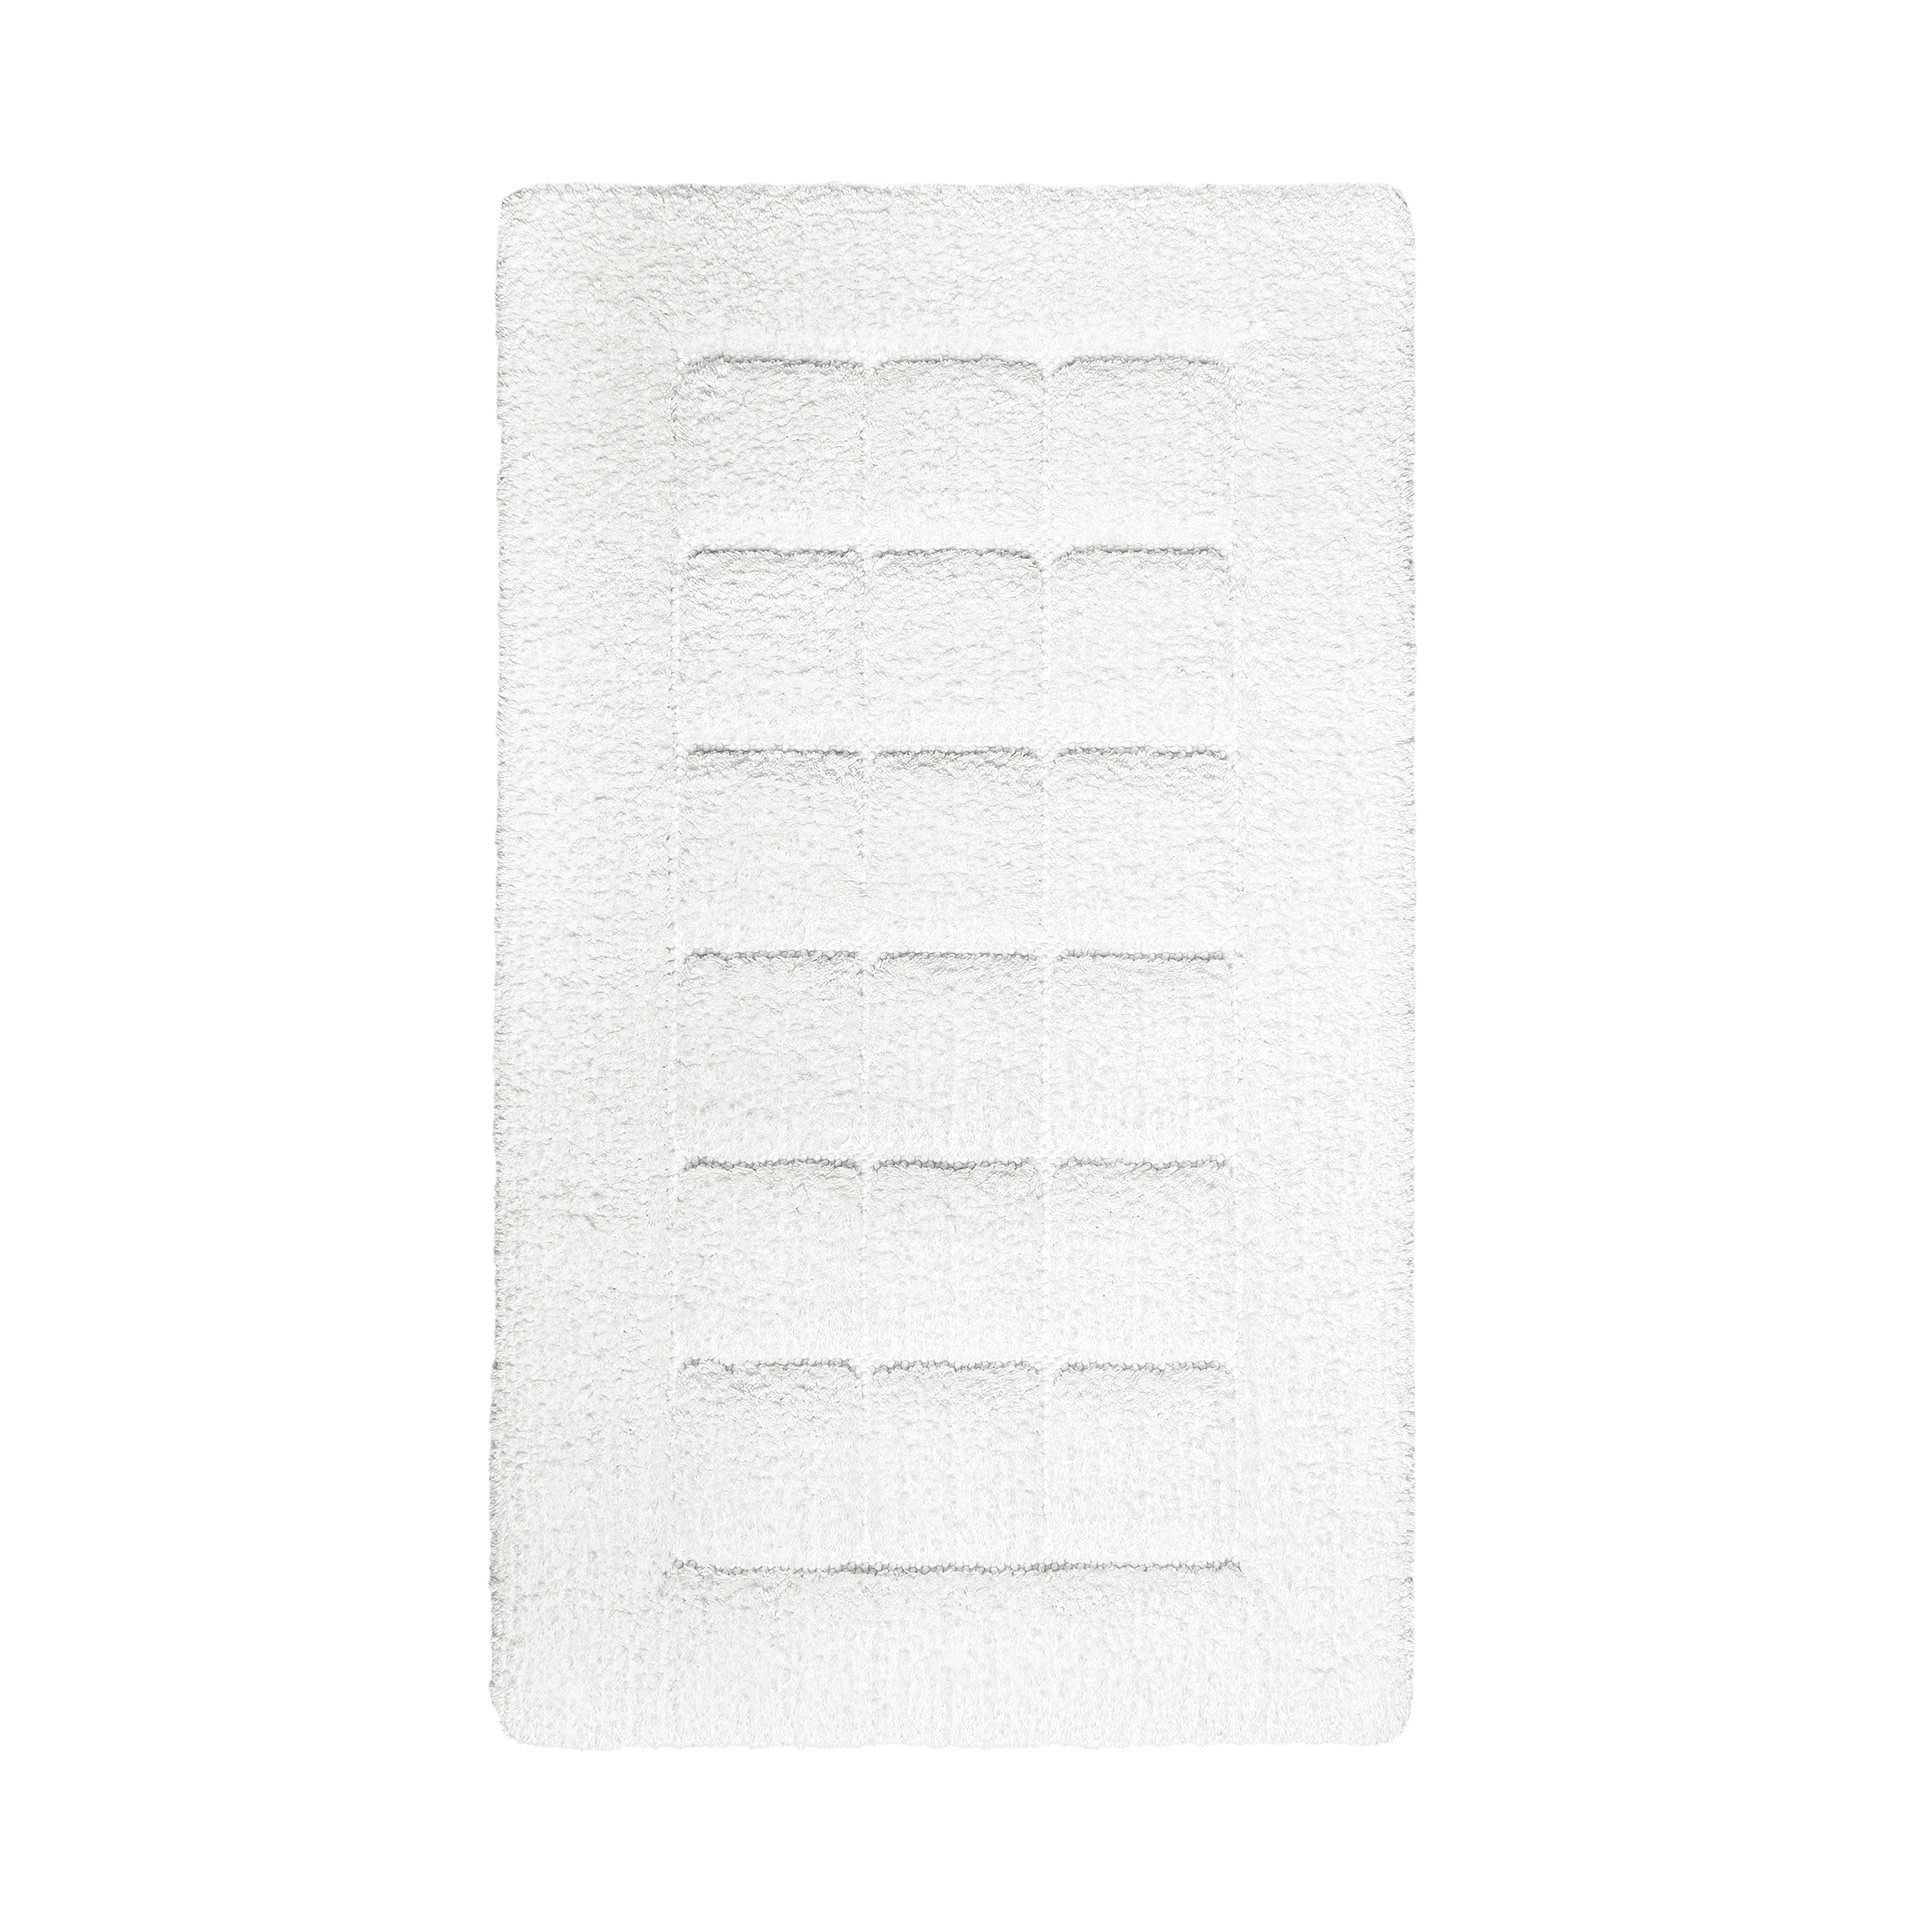 Graccioza - Heaven Towel - Storm - Bath Towel